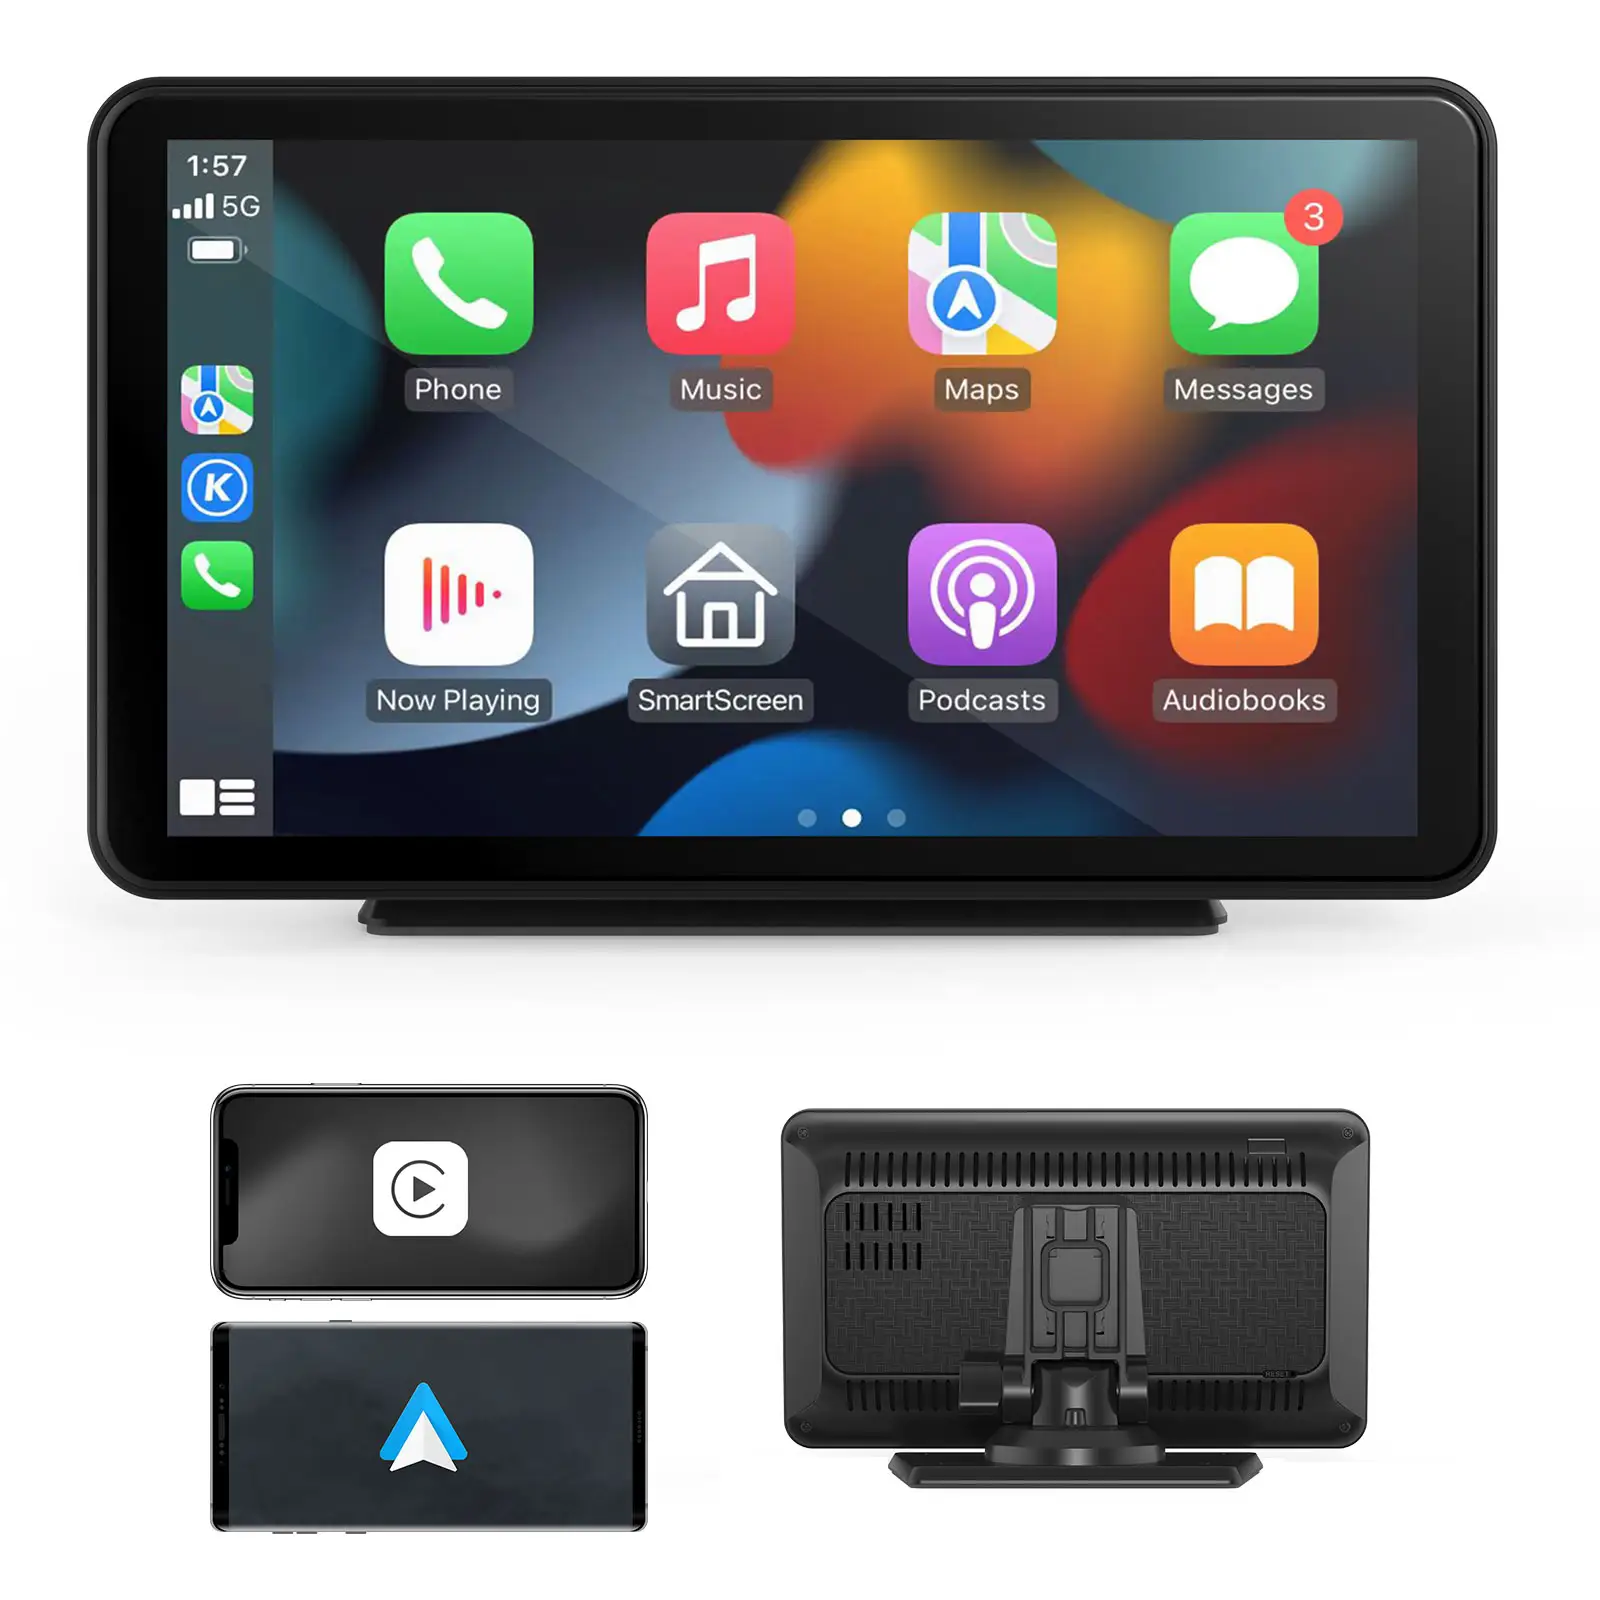 CARABC comune a tutti i modelli 2din Android 7 pollici Touch Screen auto Stereo centrale multimediale Android navigazione lettore Dvd per auto